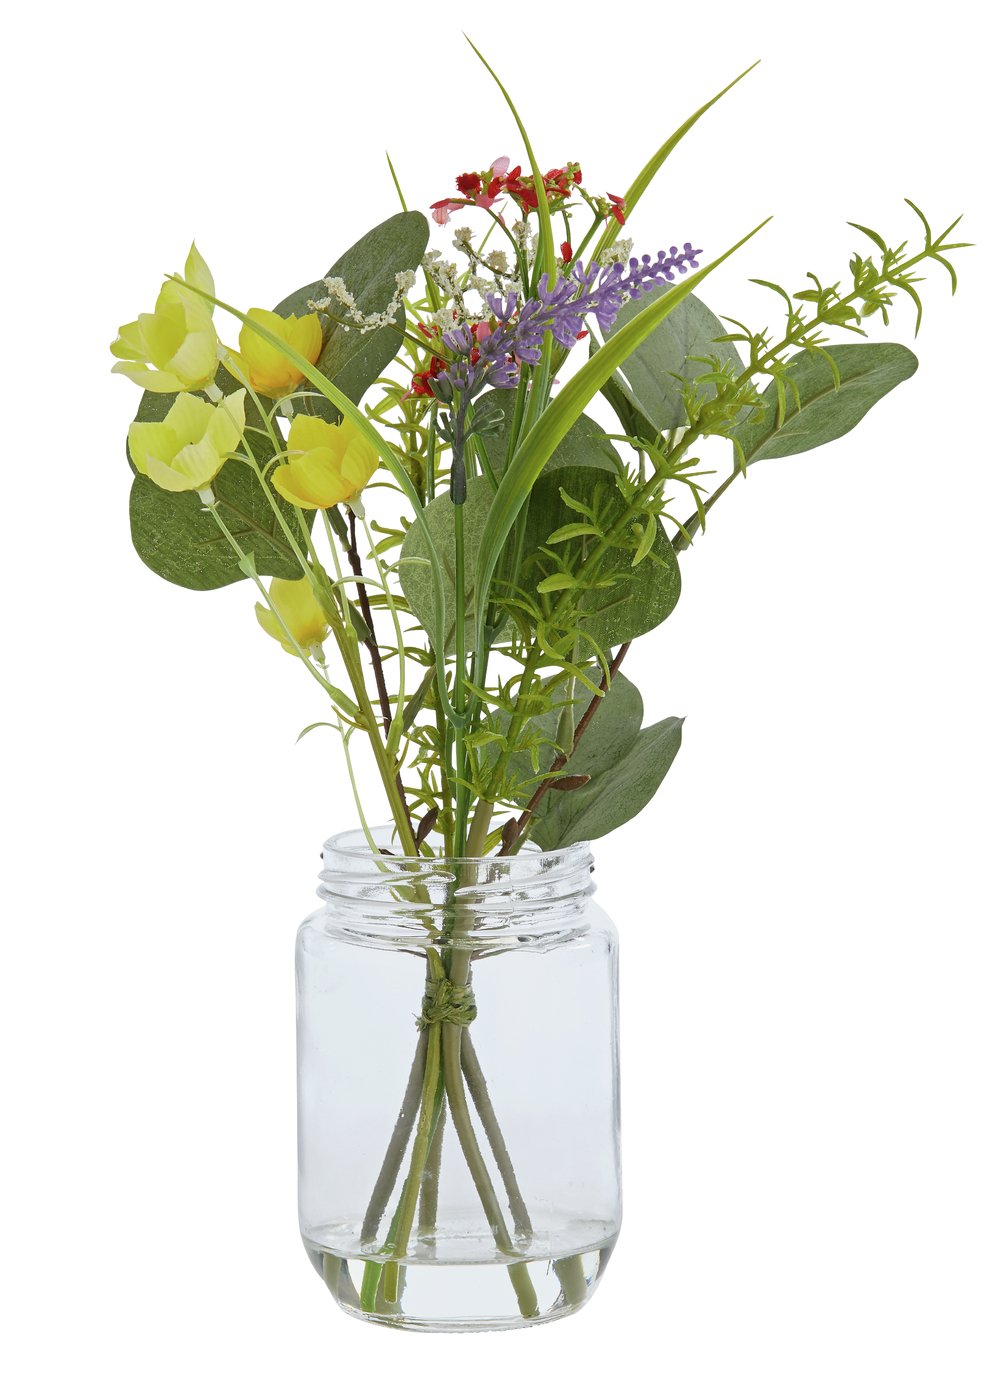 Sainsbury's Home Botanist Wild Flower Arrangement review